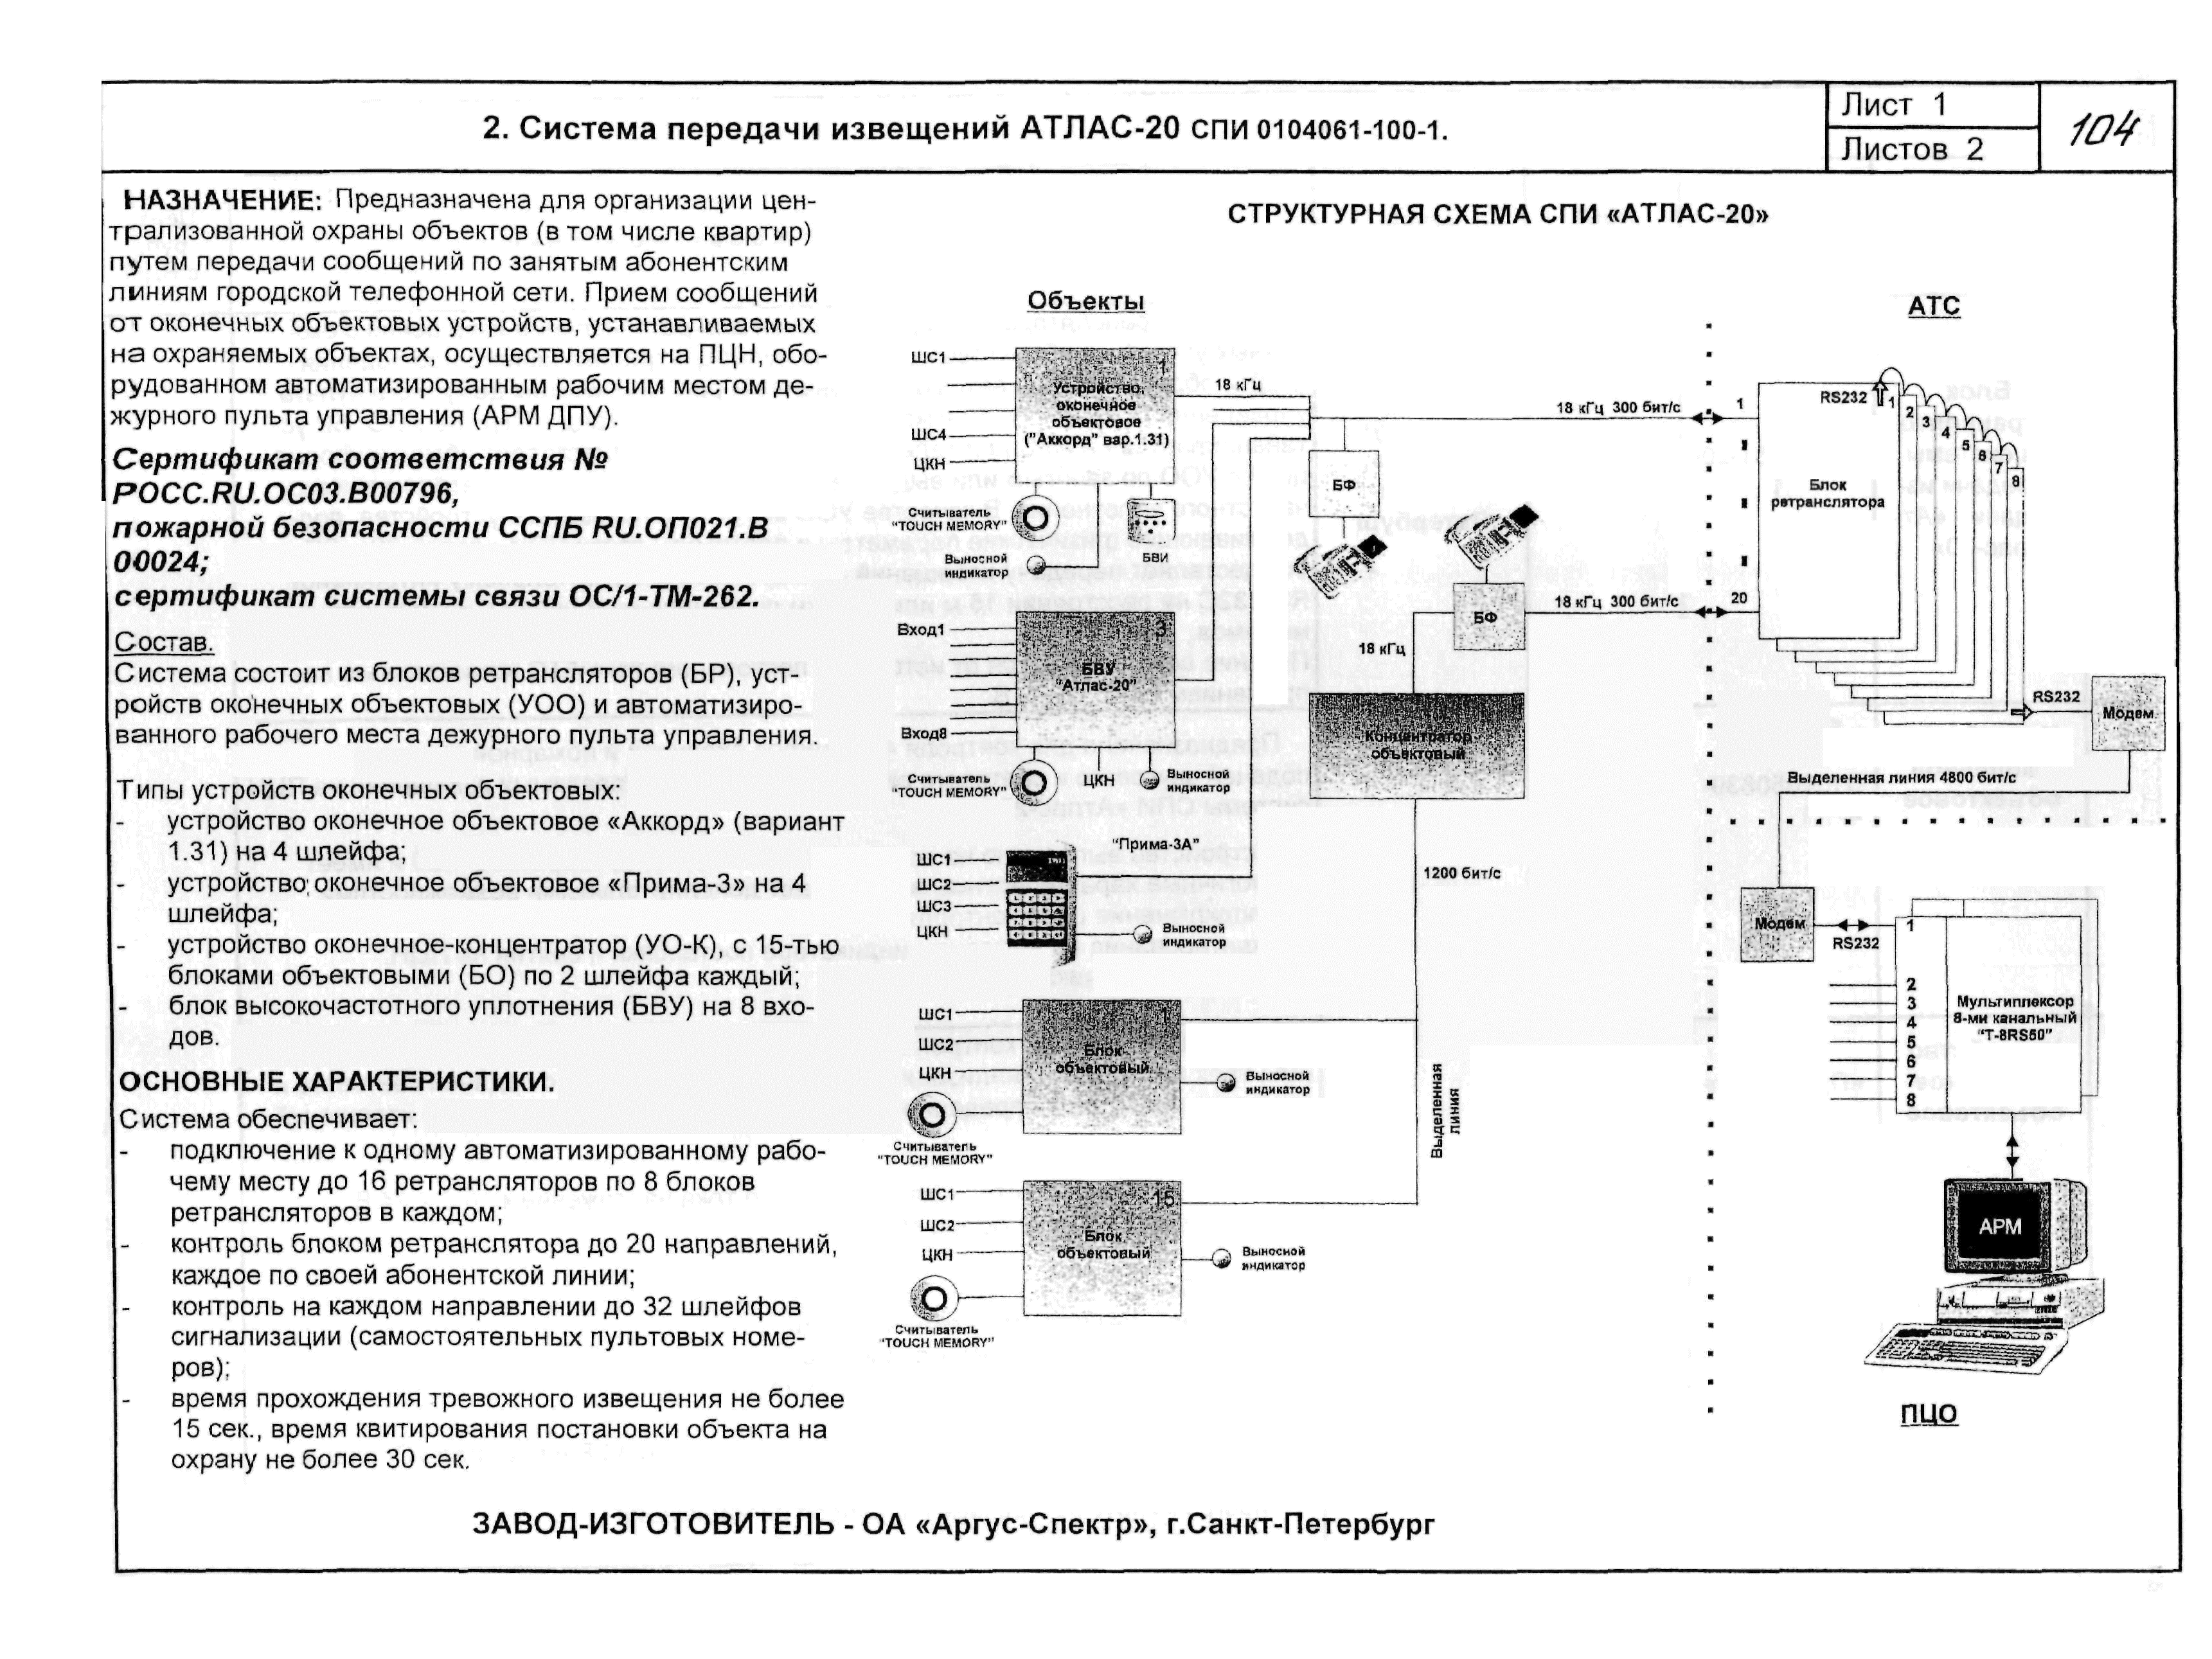 Прима инструкция по применению. Ретранслятор системы передачи извещений охранной сигнализации. Блок высокочастотного уплотнения (БВУ) «атлас-20». БВУ атлас 20 схема расключения. Электрическая схема системы передачи извещений "Ахтуба".